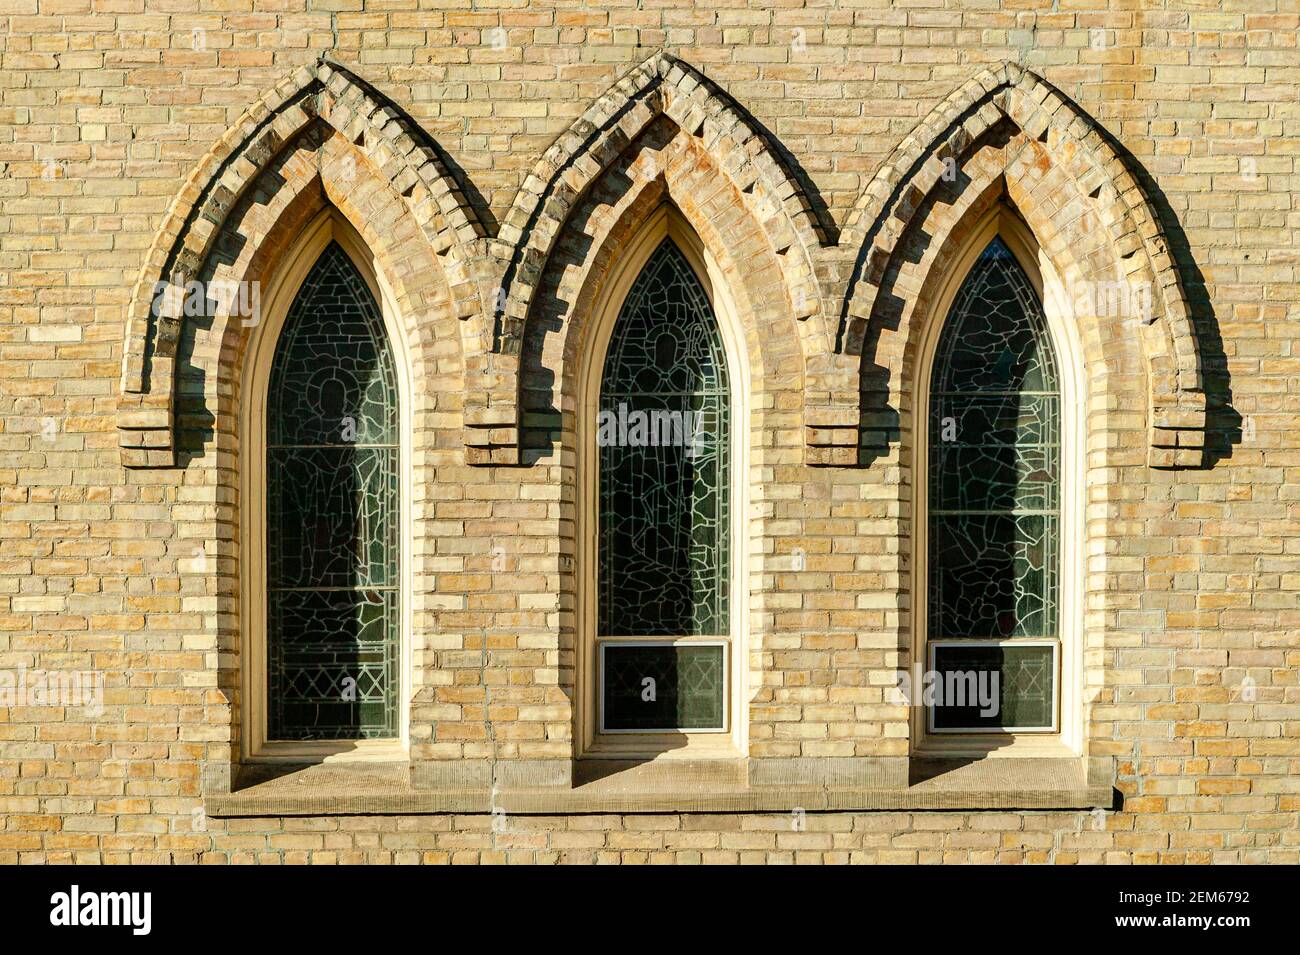 Un ensemble de fenêtres en verre au plomb encadrées de briques sur une église en Ontario. Banque D'Images